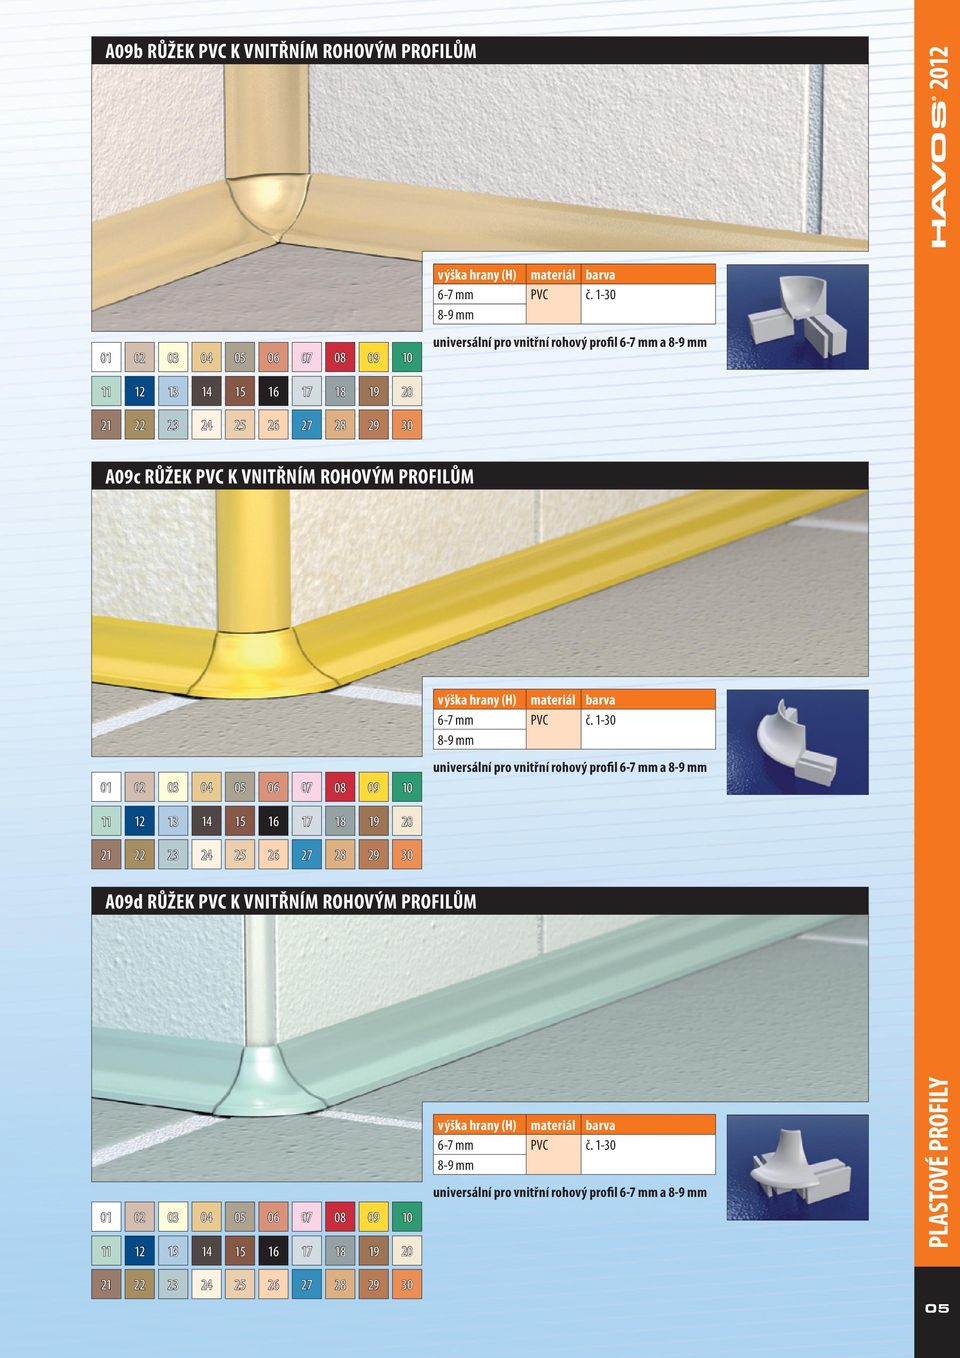 materiál barva 6-7 mm č. 1-30 8-9 mm universální pro vnitřní rohový profil 6-7 mm a 8-9 mm výška hrany () materiál barva 6-7 mm č.